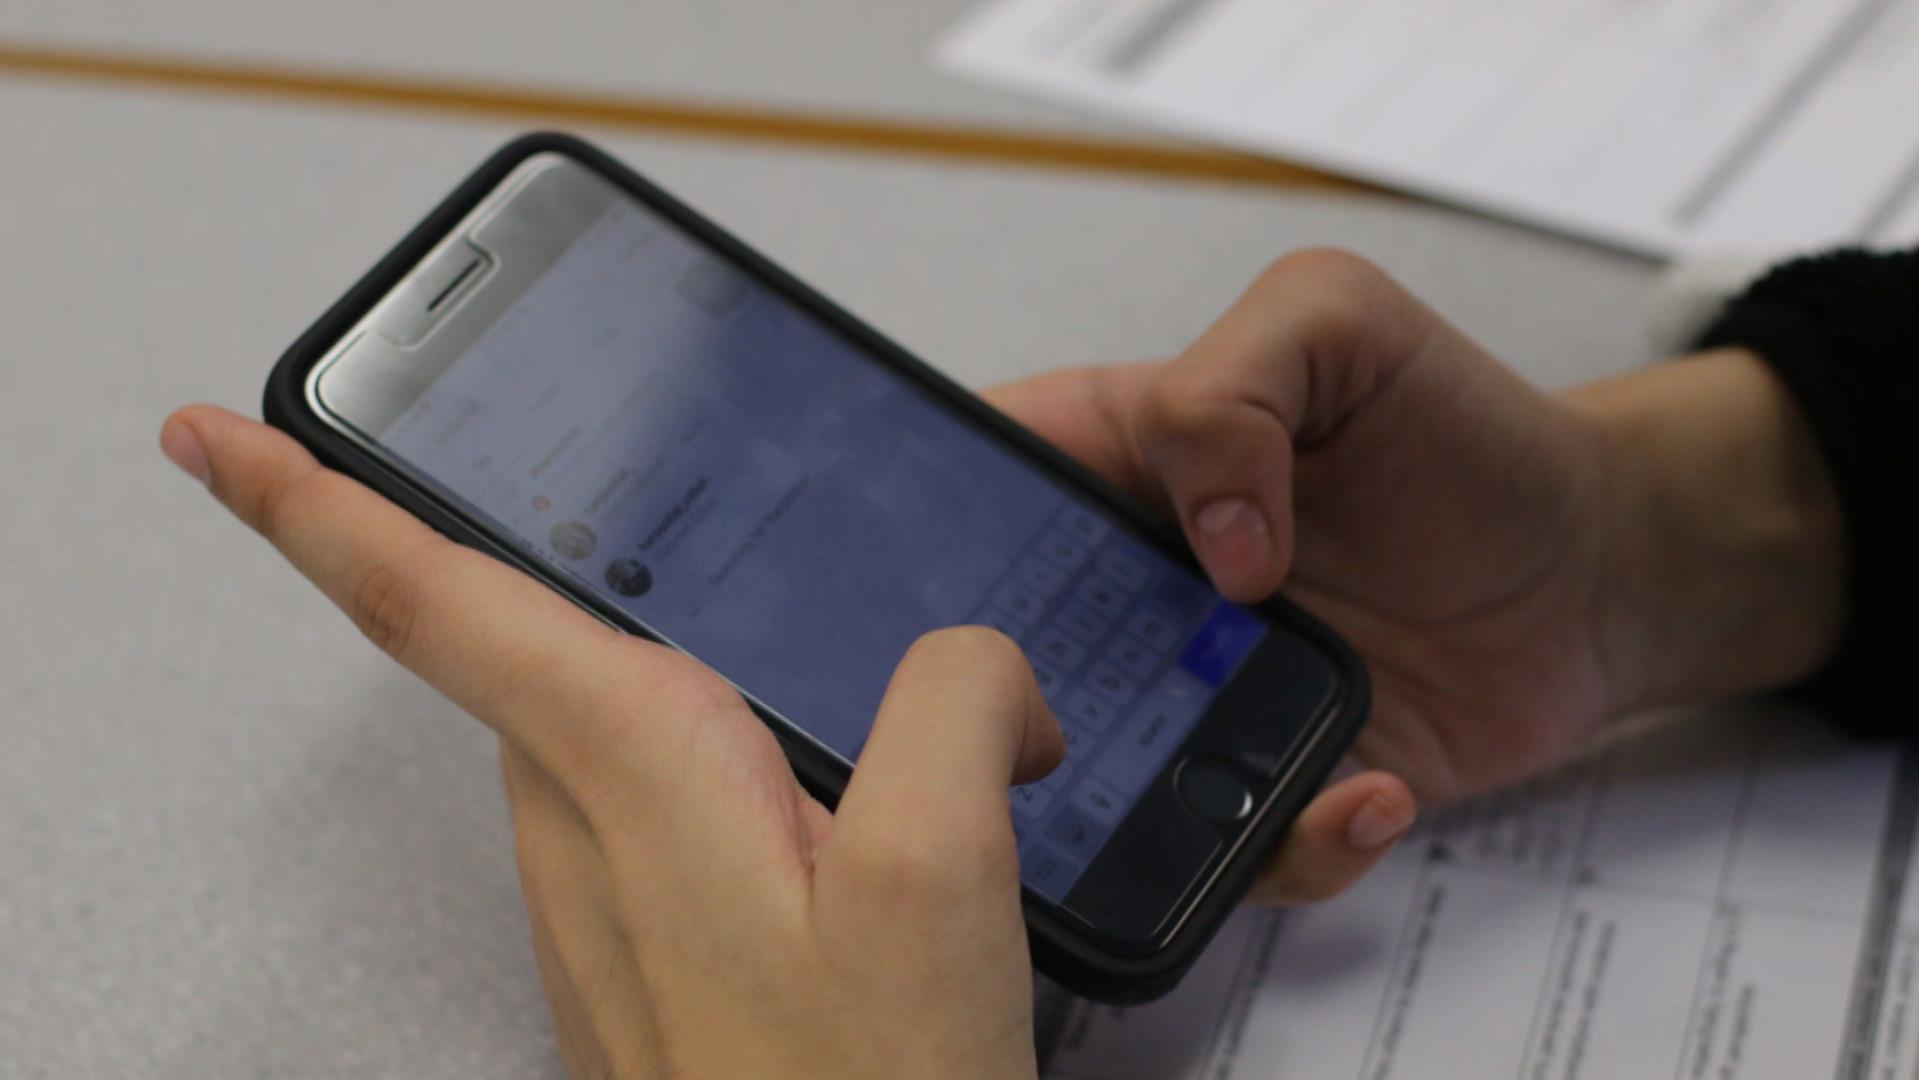 Interdiction des téléphones portables en classe - Les pour et les